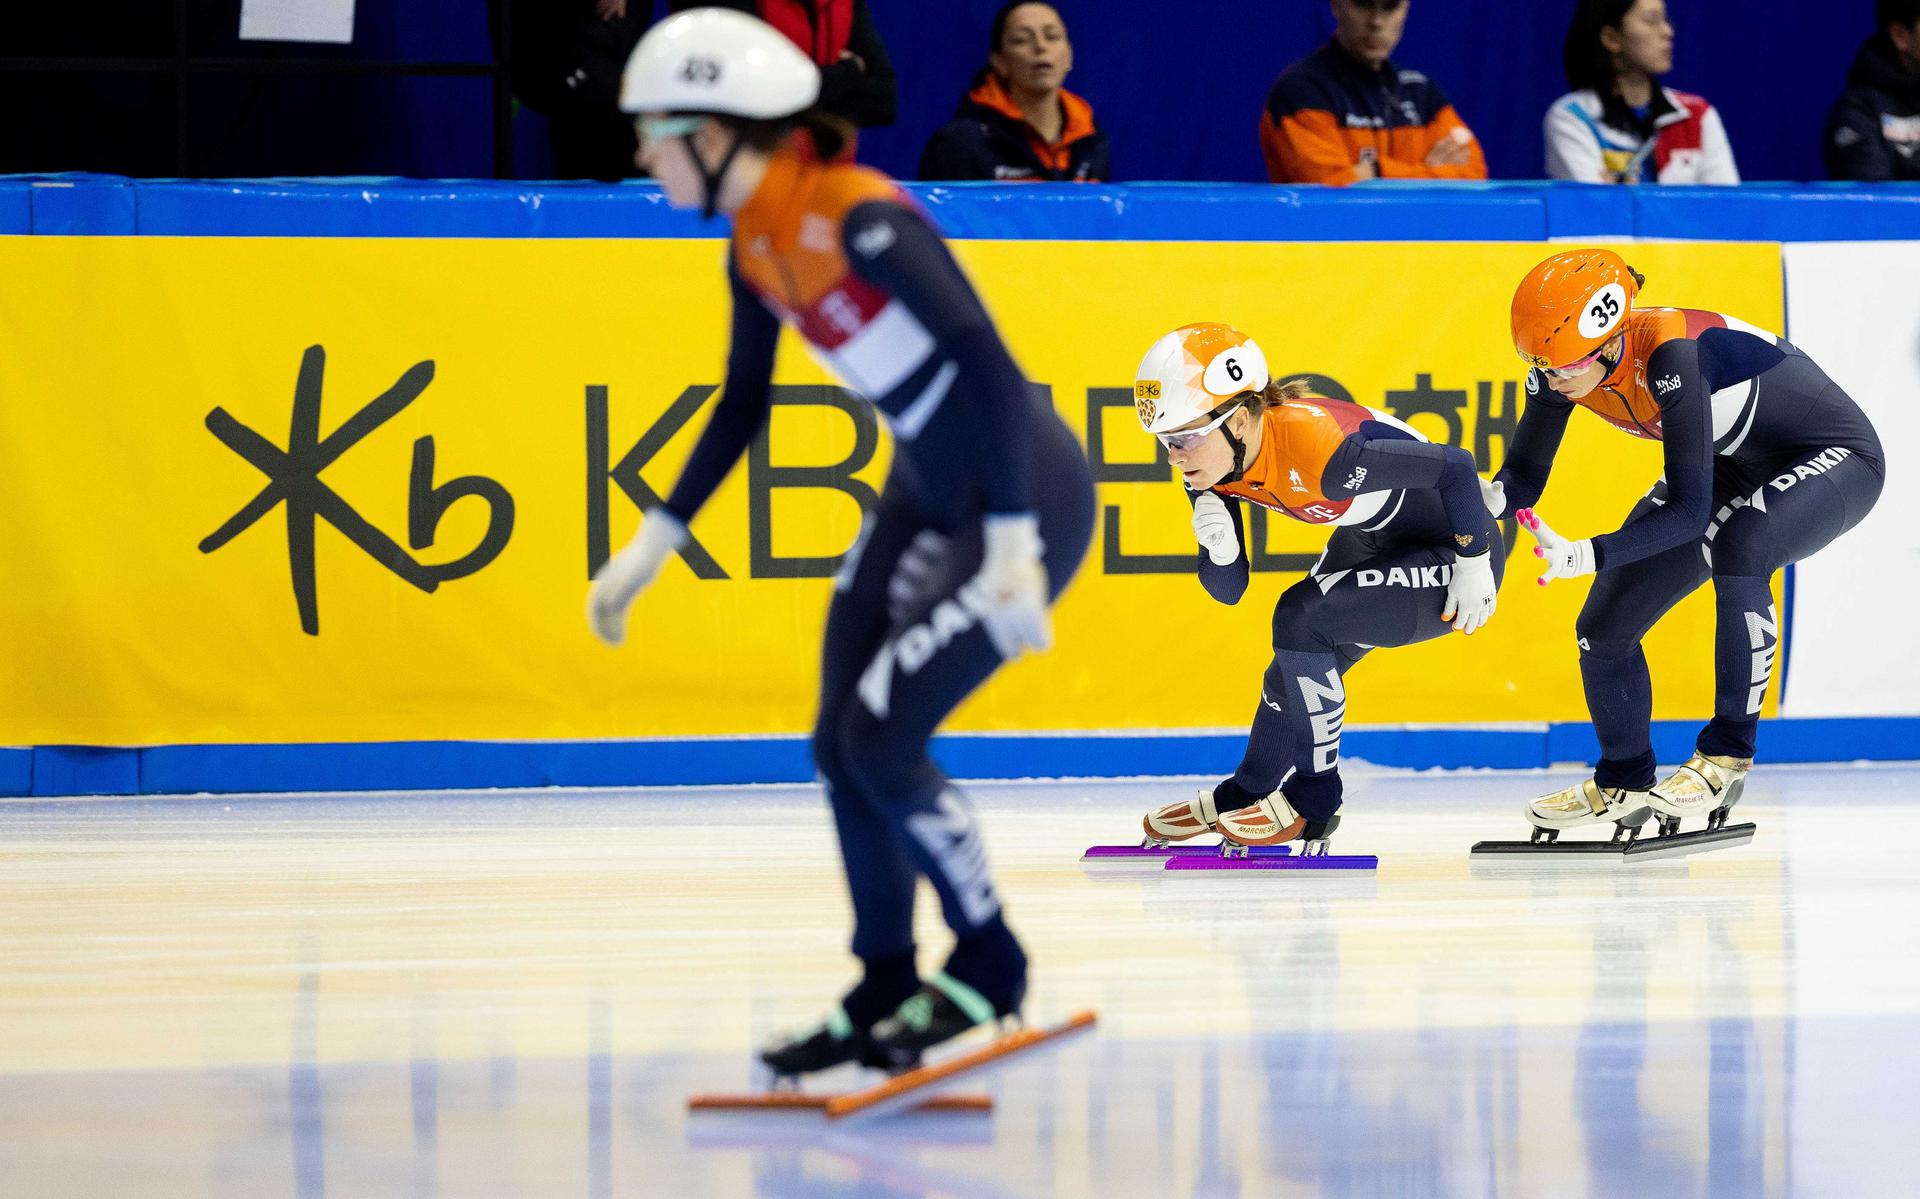 Suzanne Schulting (r), Yara van Kerkhof (m) en Selma Poutsma (r) in actie tijdens halve finale op de 3000 meter relay tijdens het WK Shorttrack in Zuid-Korea.